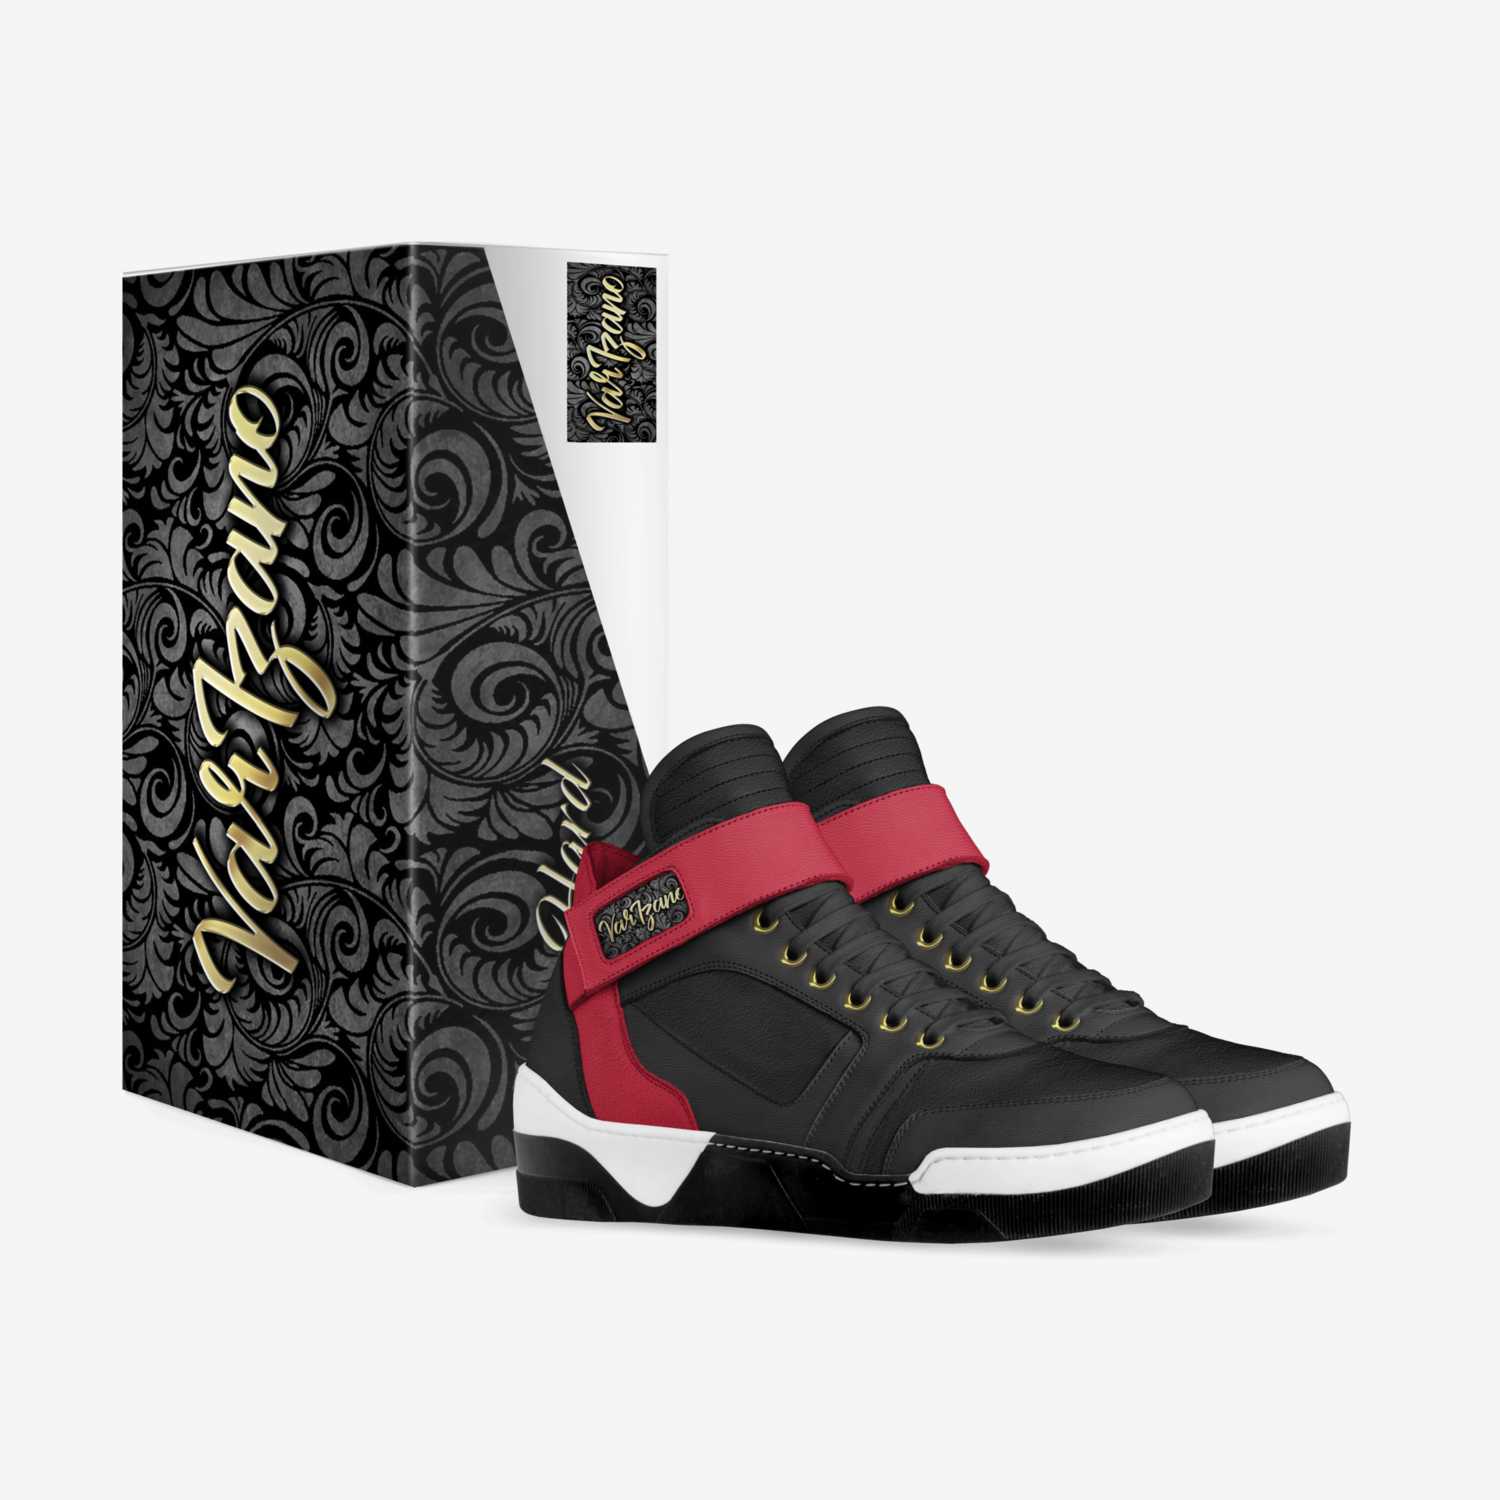 Varizano Go Hard custom made in Italy shoes by Varizano | Box view